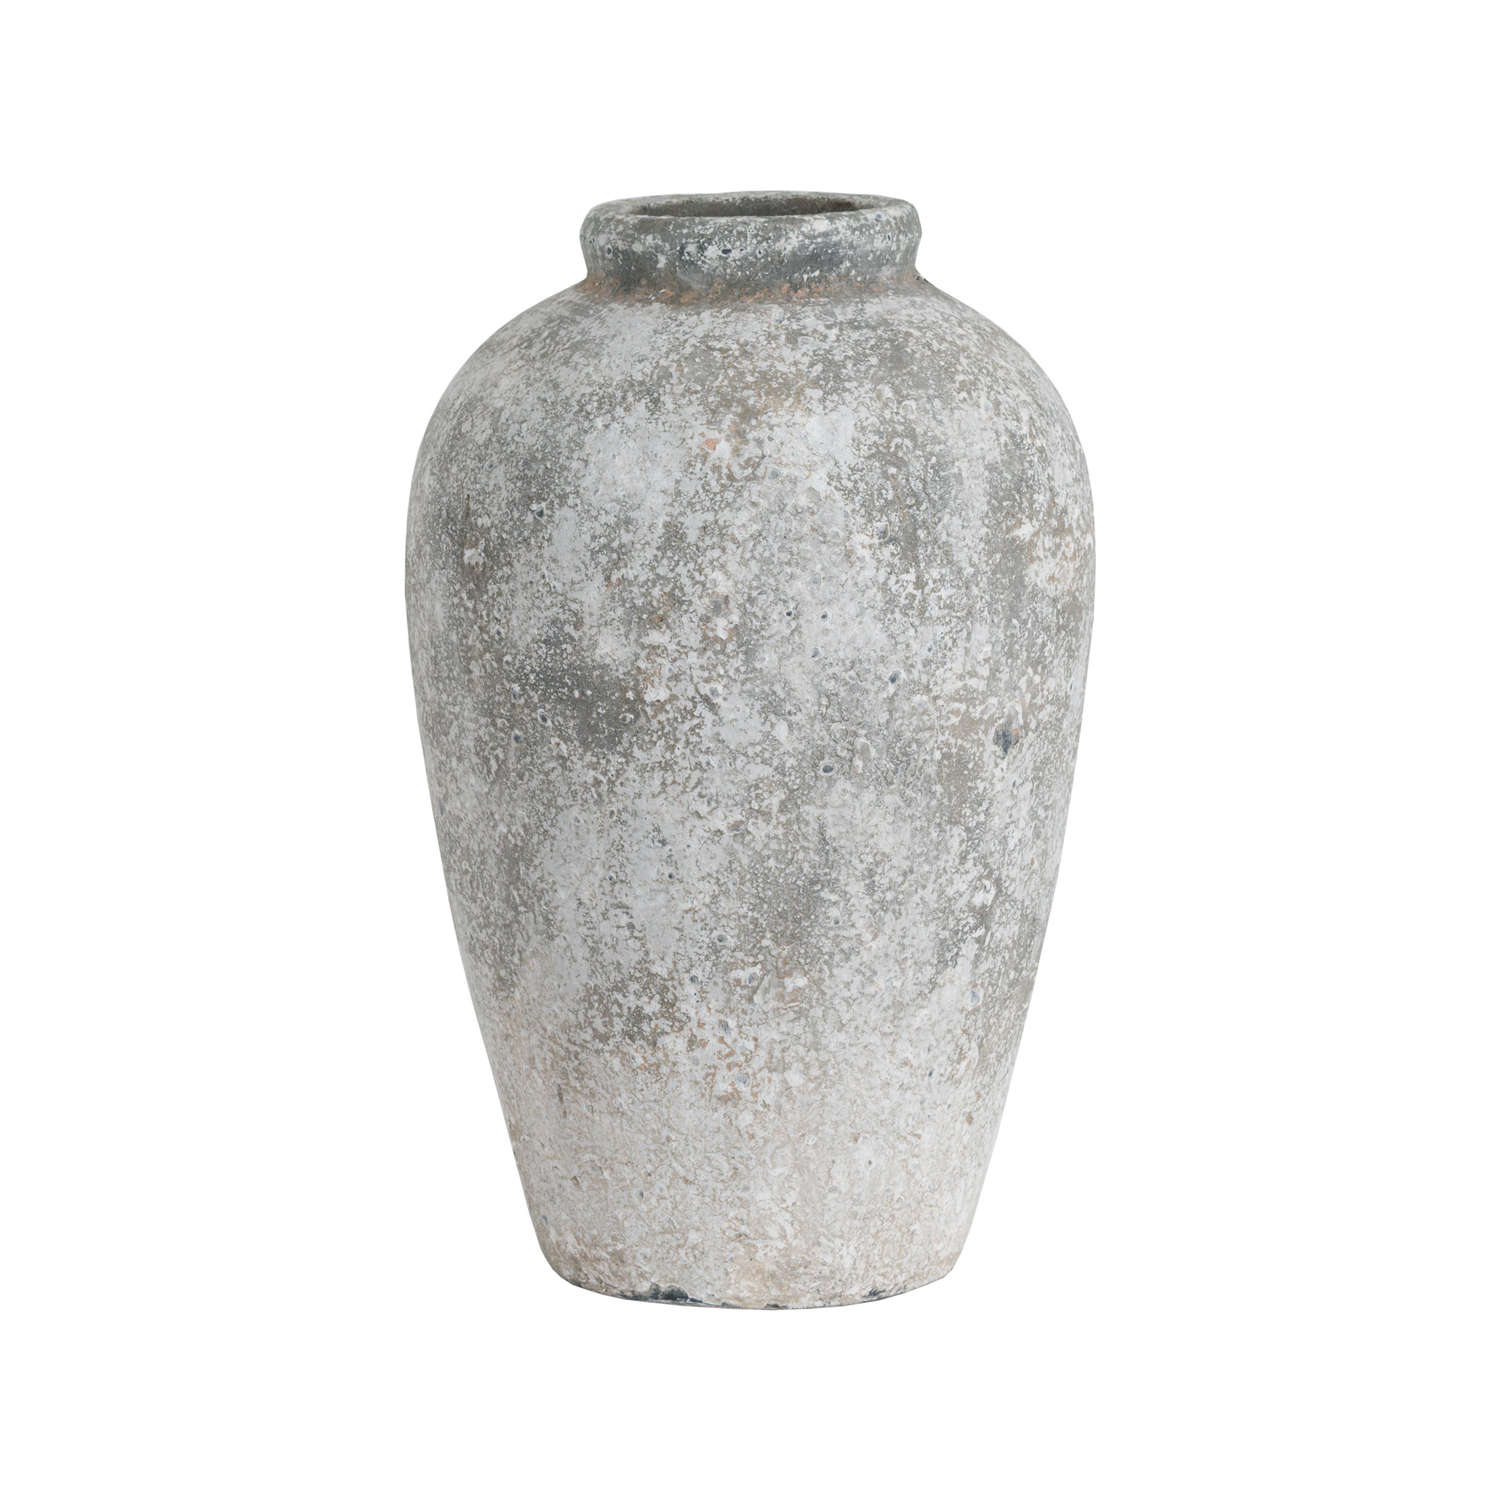 Aged Stone Tall Ceramic Vase - Image 1